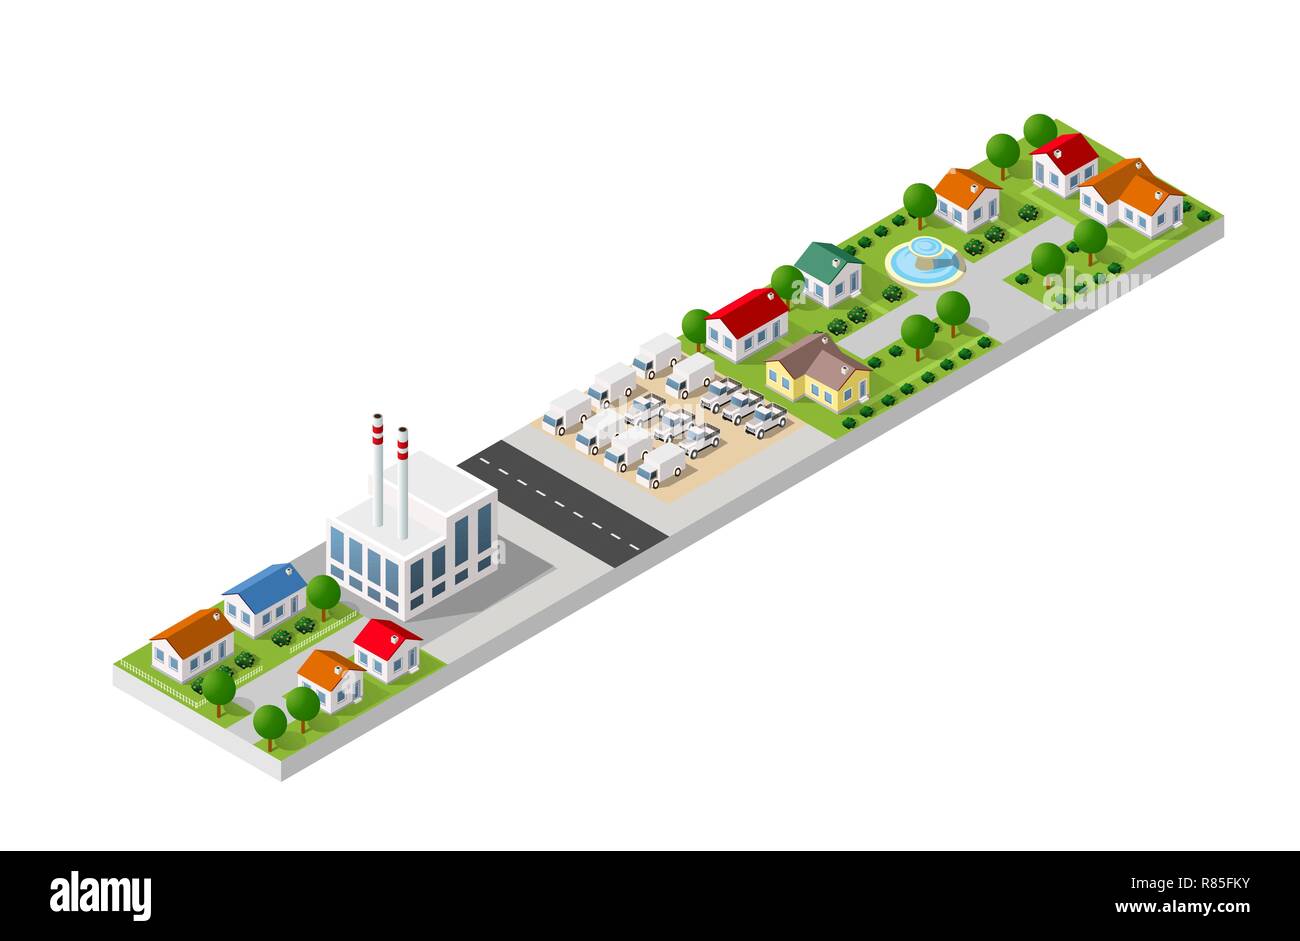 Paysage en 3D isométrique d'une petite ville avec des maisons et des rues avec des arbres Illustration de Vecteur